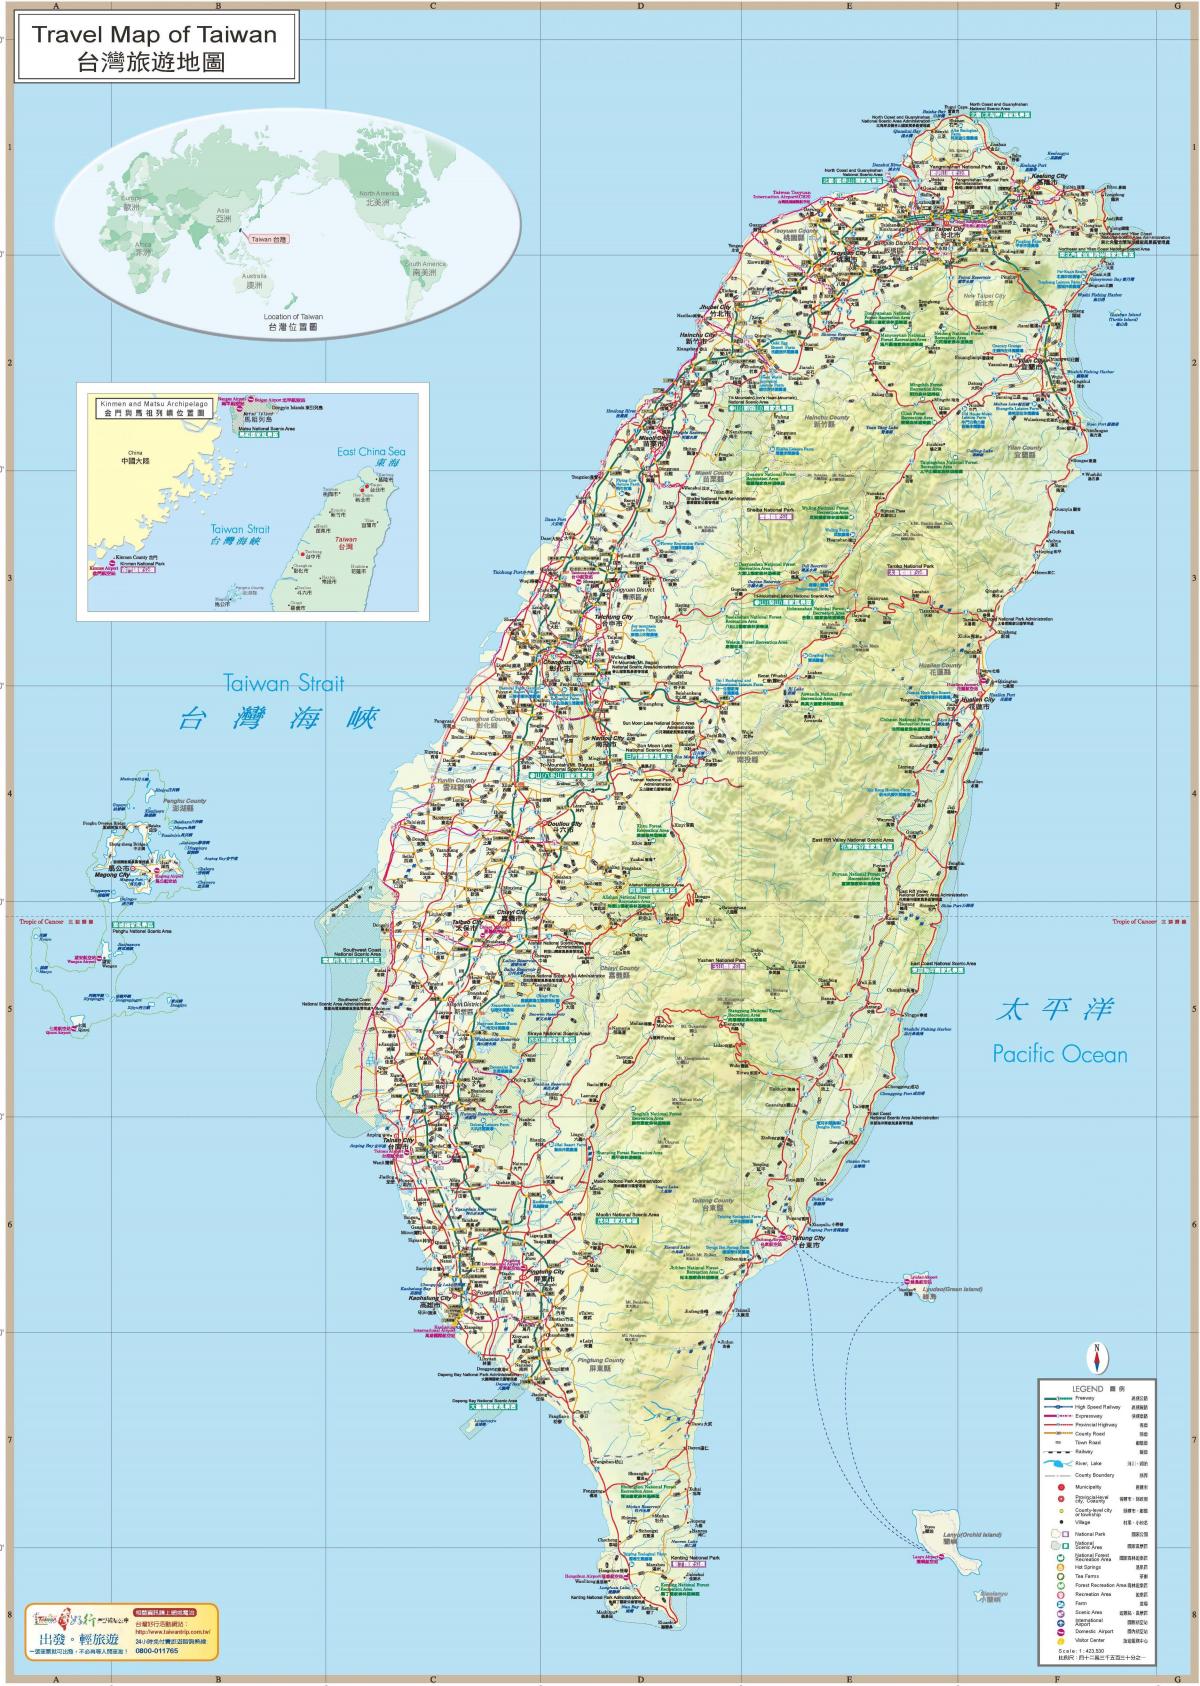 Taiwan gabay sa paglalakbay mapa